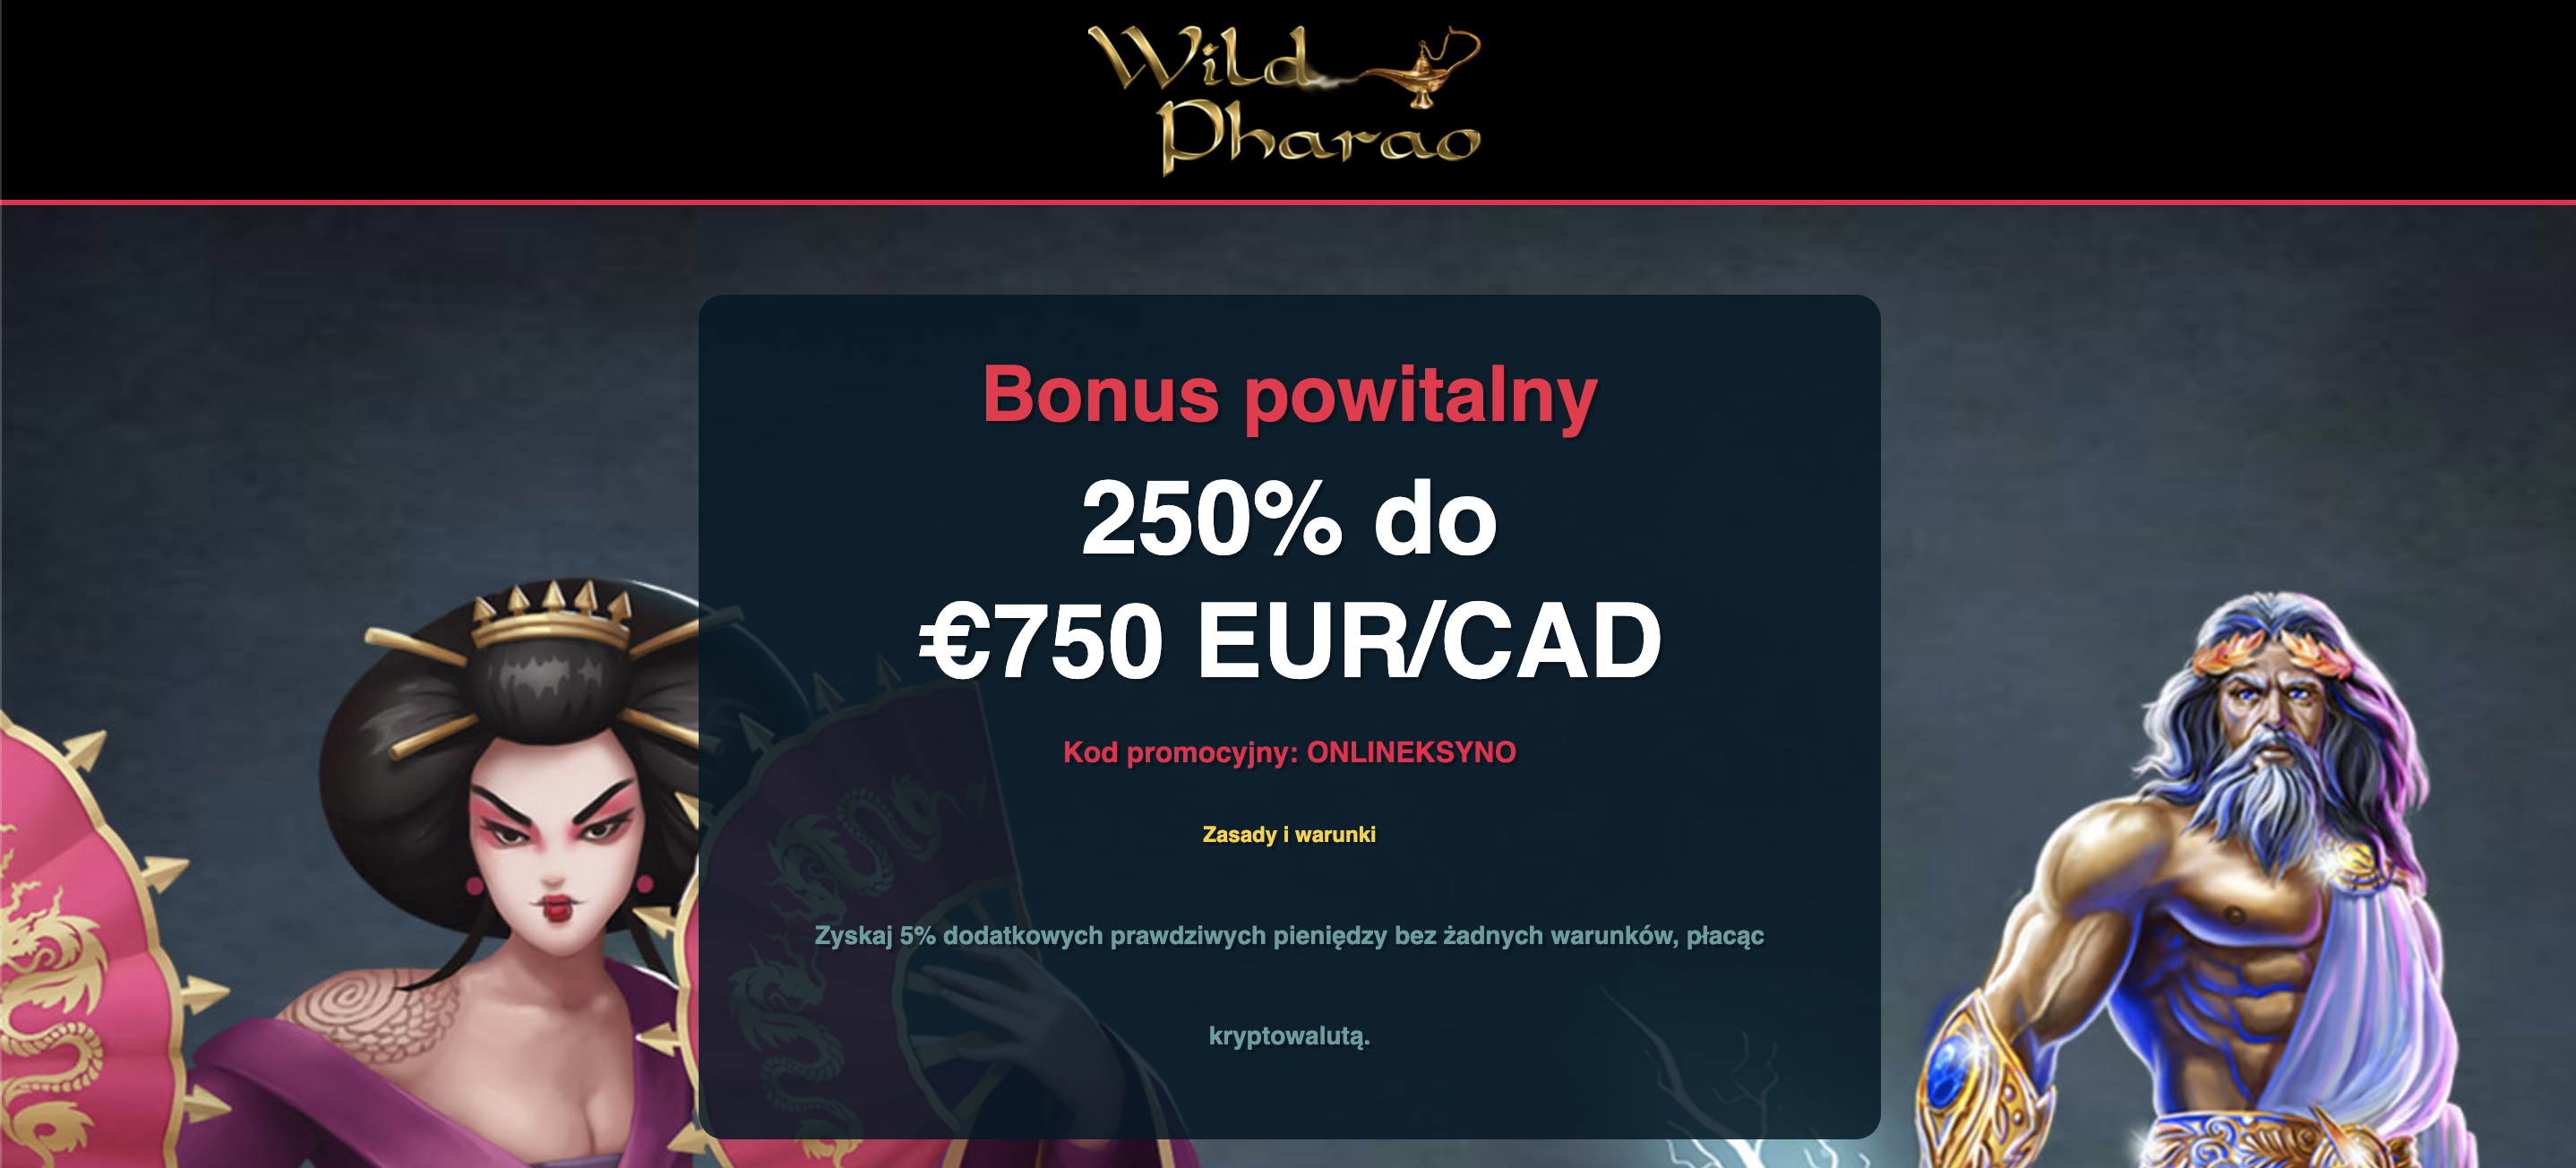 Promo-Code-czyli-kod-promocyjny-WildPharao-casino-(onlineksyno.com)